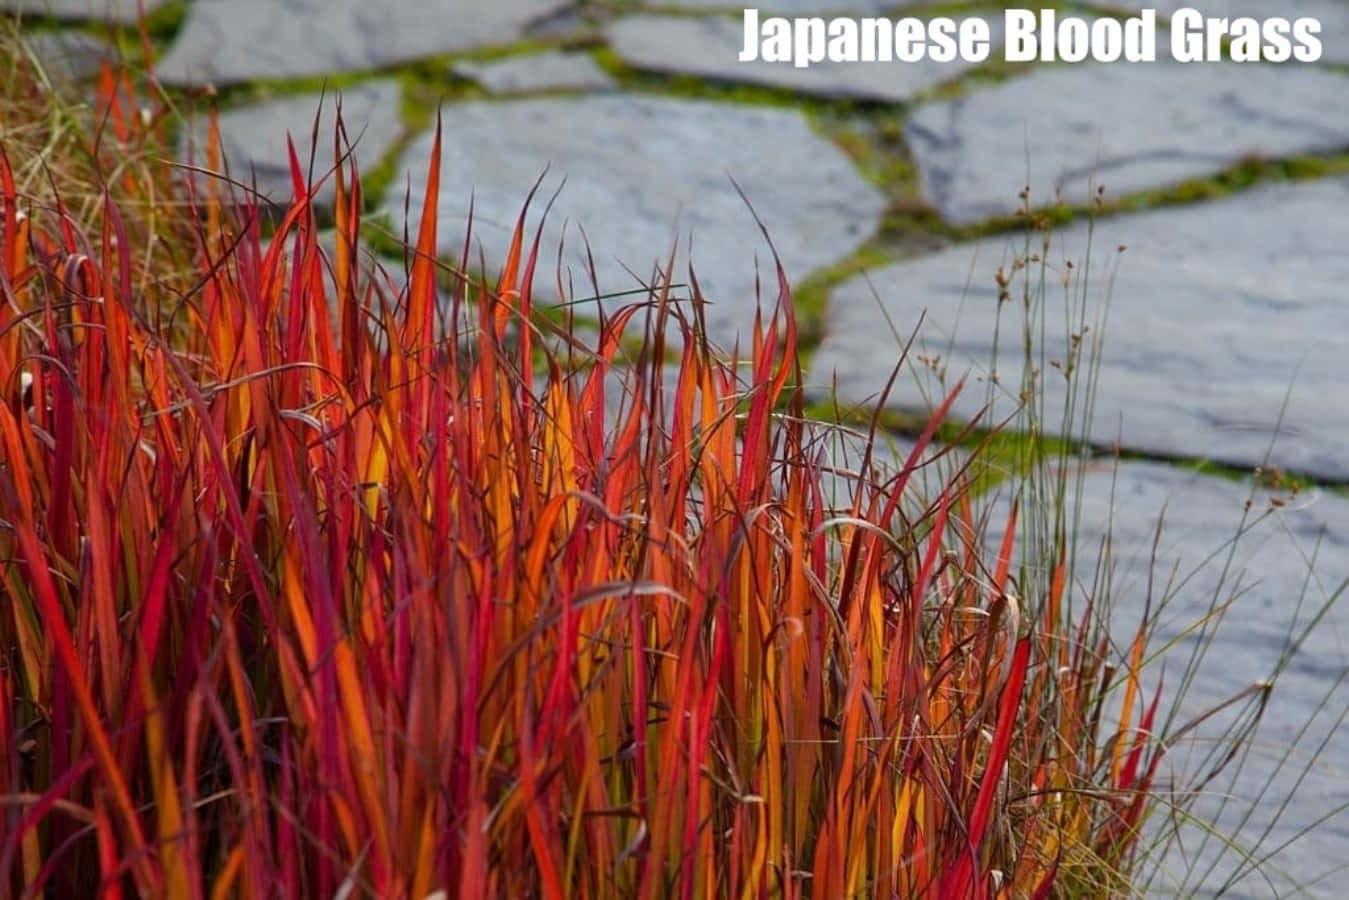 Grasanerkennungjapanisches Blutpflanzen-fotografiebild